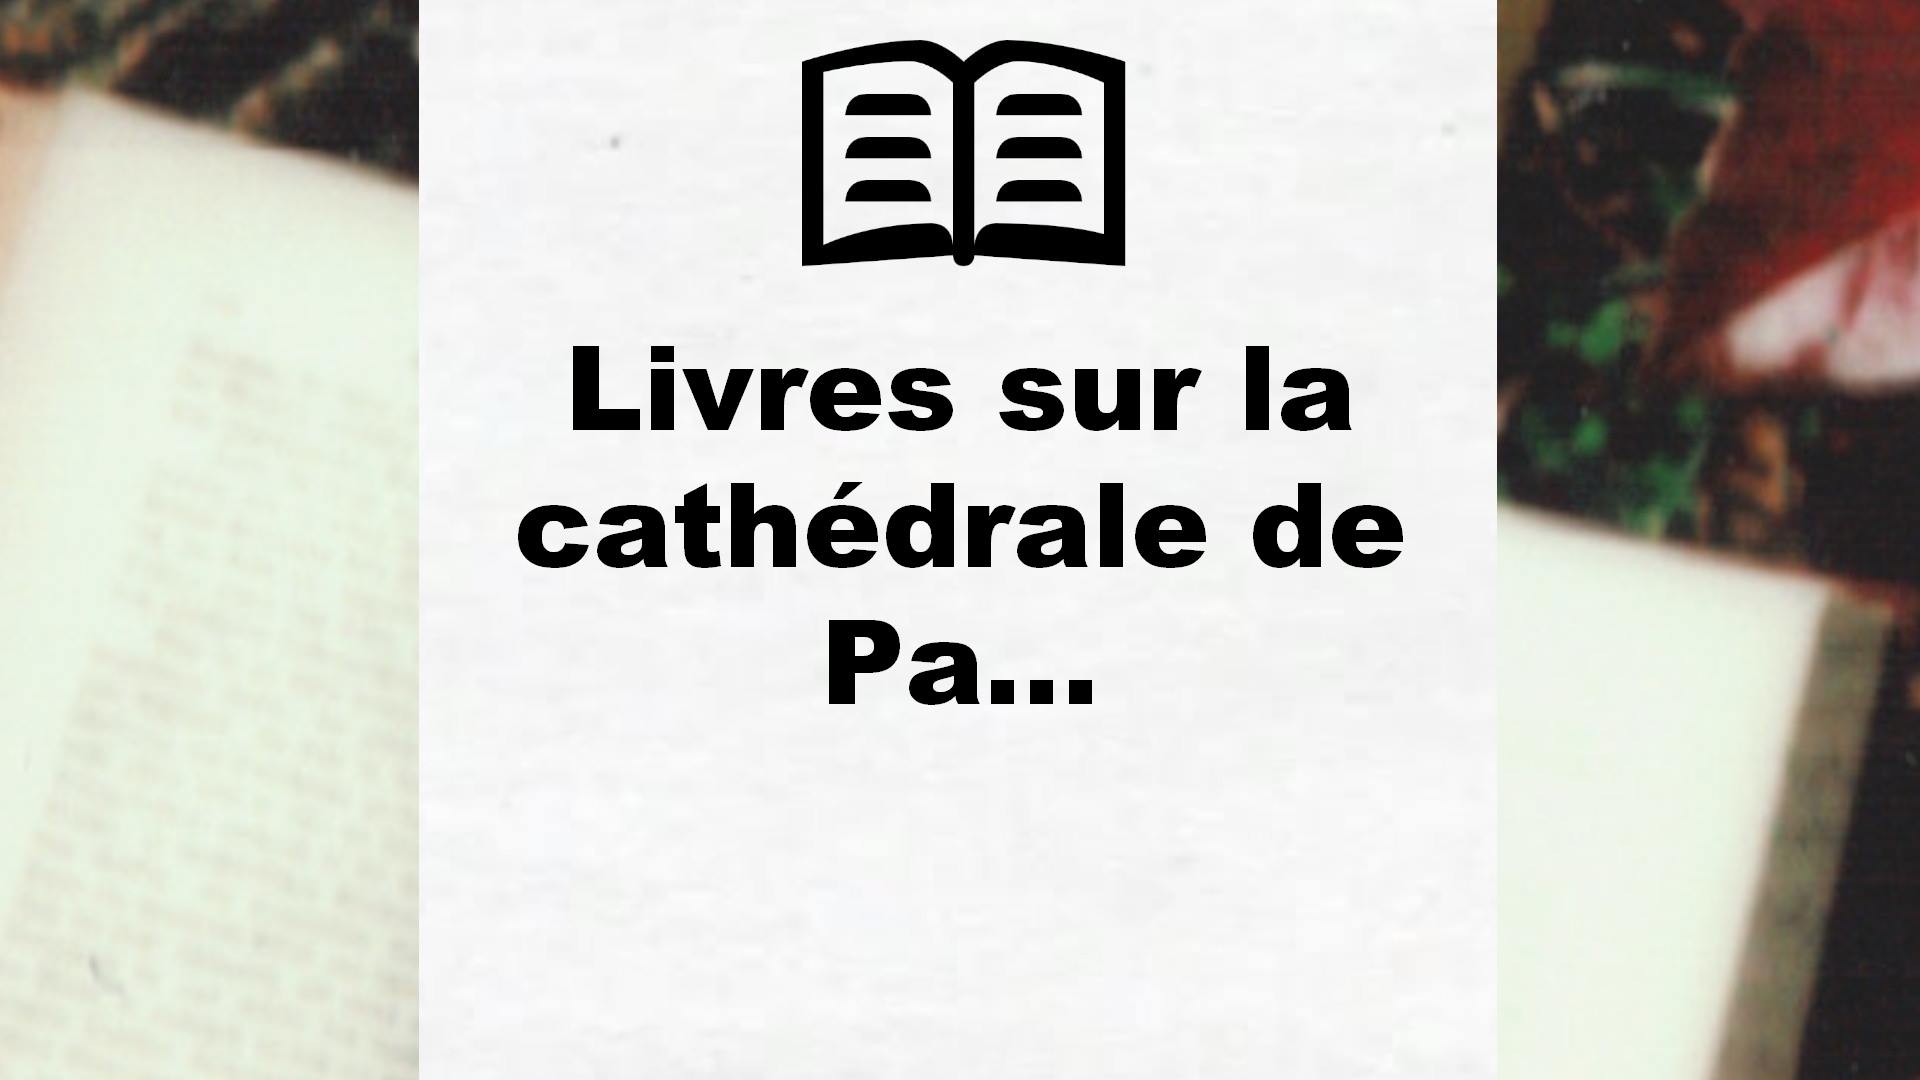 Livres sur la cathédrale de Paris